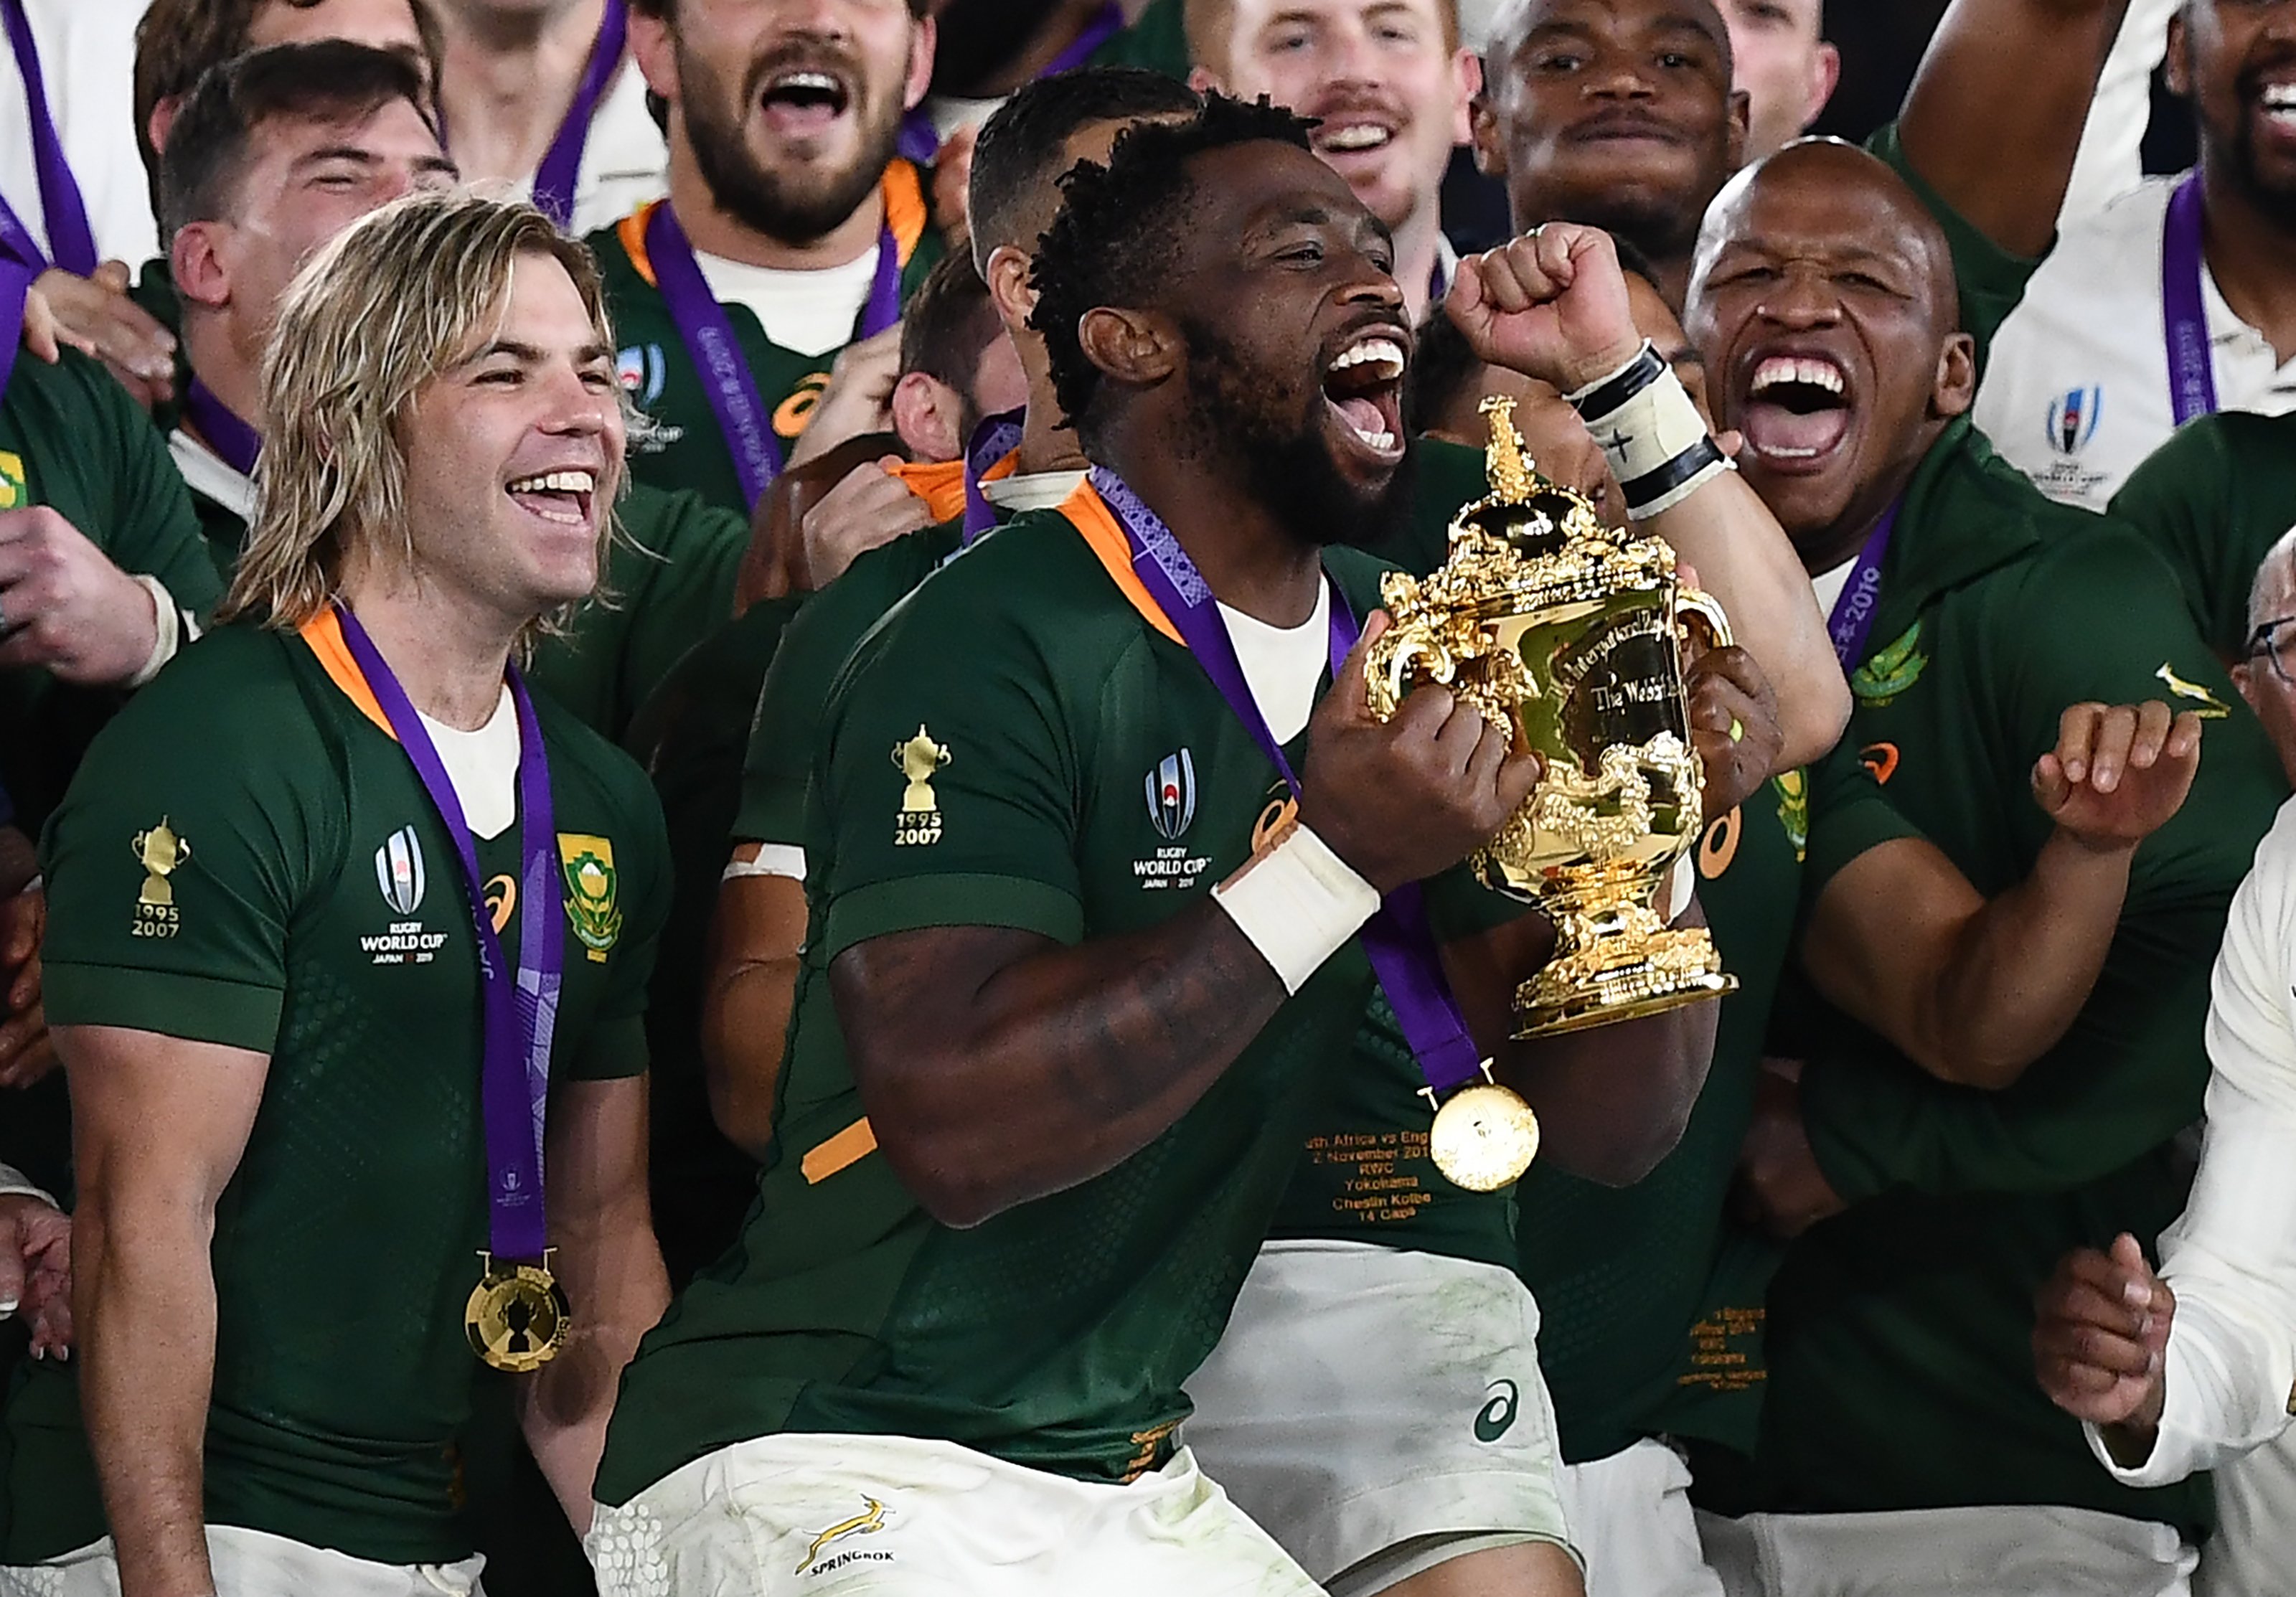 Résultat de recherche d'images pour "south africa ellis cup 2019"